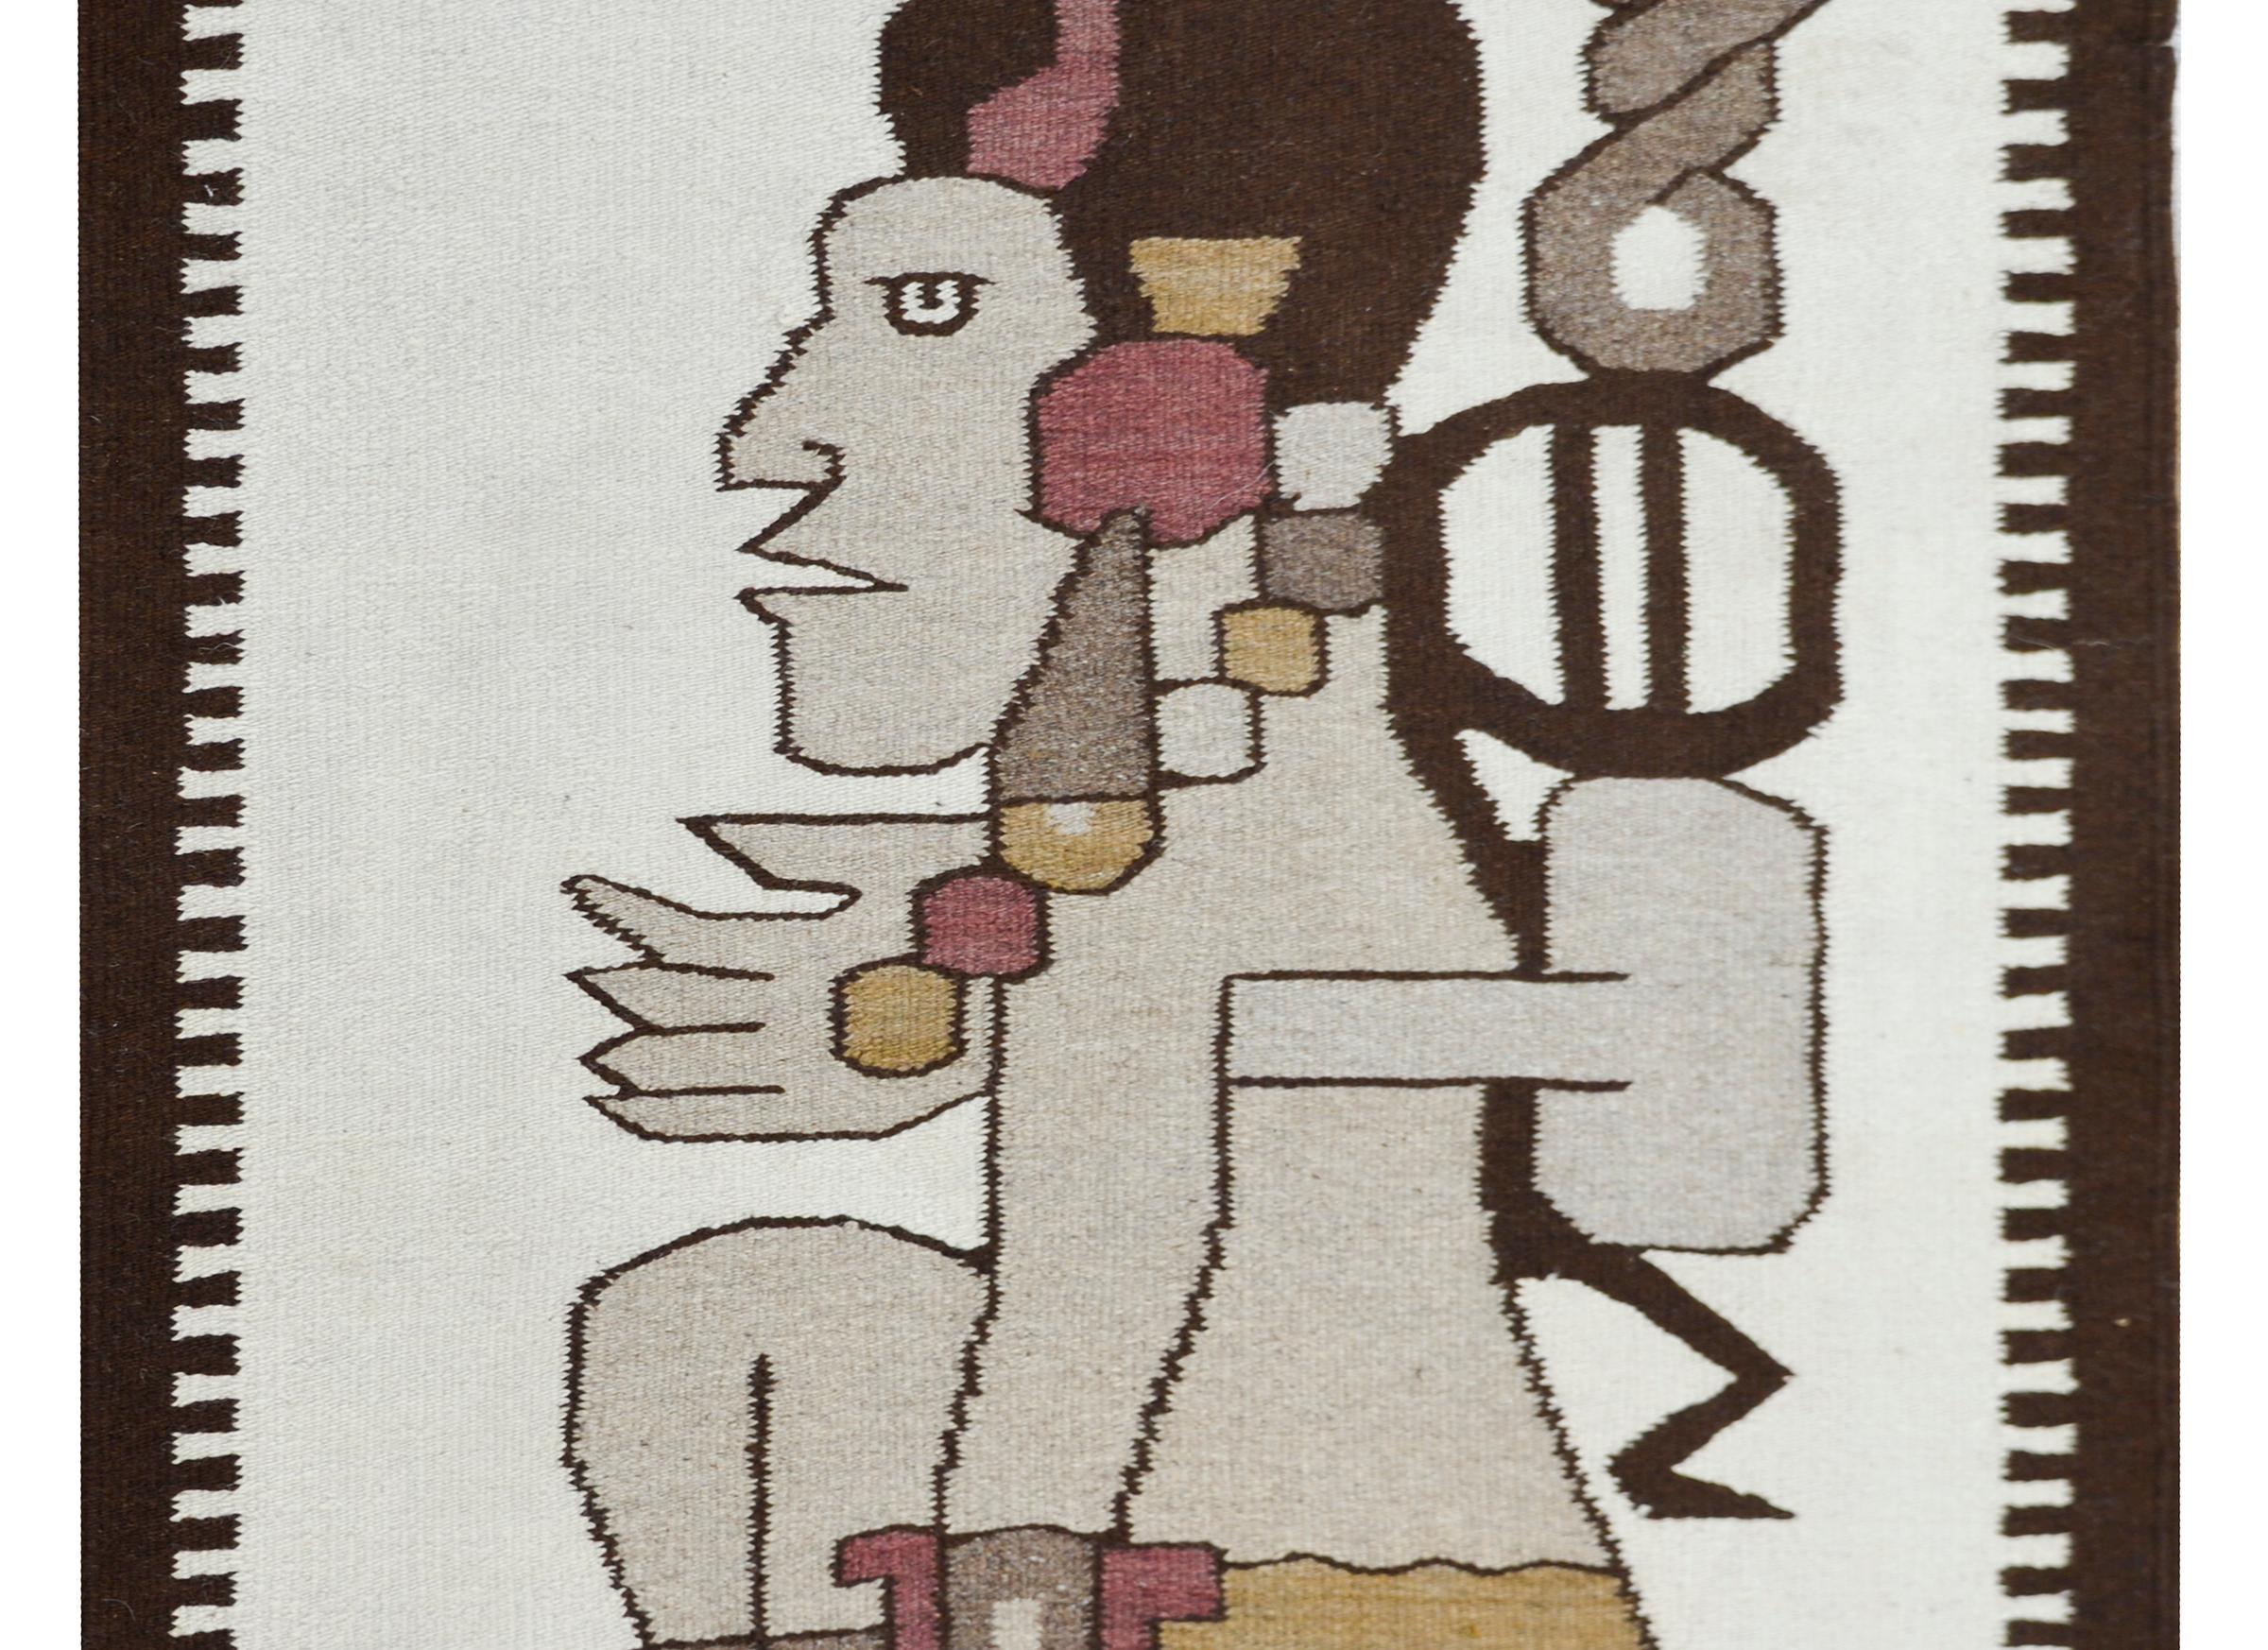 Magnifique tapis mexicain en laine tissé à la main à la fin du 20e siècle, avec une grande figure centrale aztèque de profil, entourée d'une bordure en laine brune avec deux bandes à chaque extrémité.